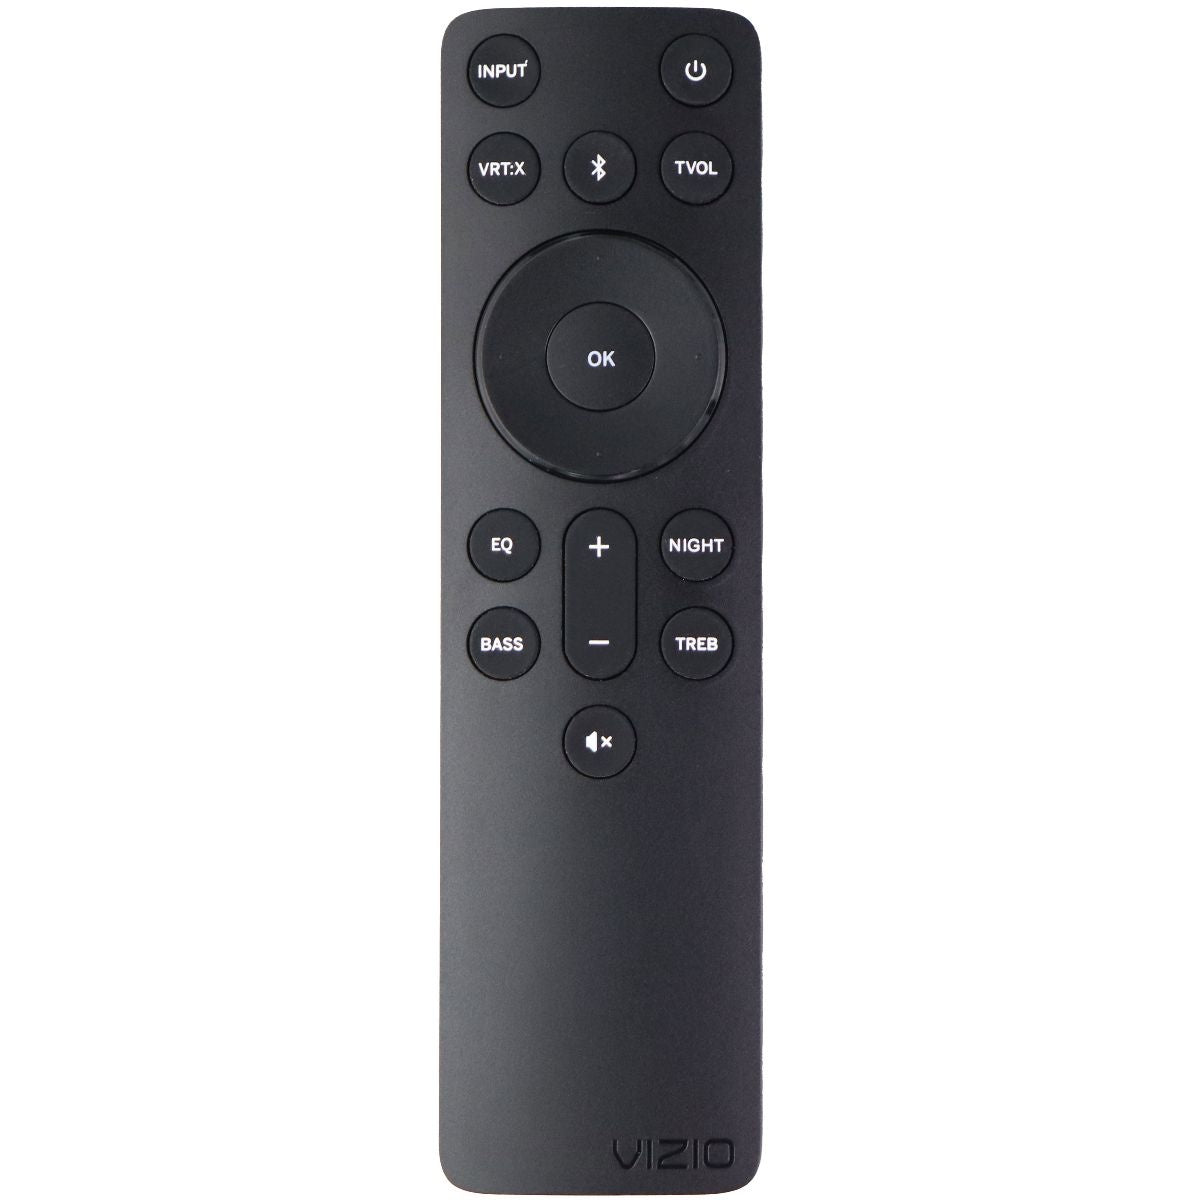 Vizio Remote Control (ND-2020) for Select Vizio Sound Bars - Black TV, Video & Audio Accessories - Remote Controls Vizio    - Simple Cell Bulk Wholesale Pricing - USA Seller